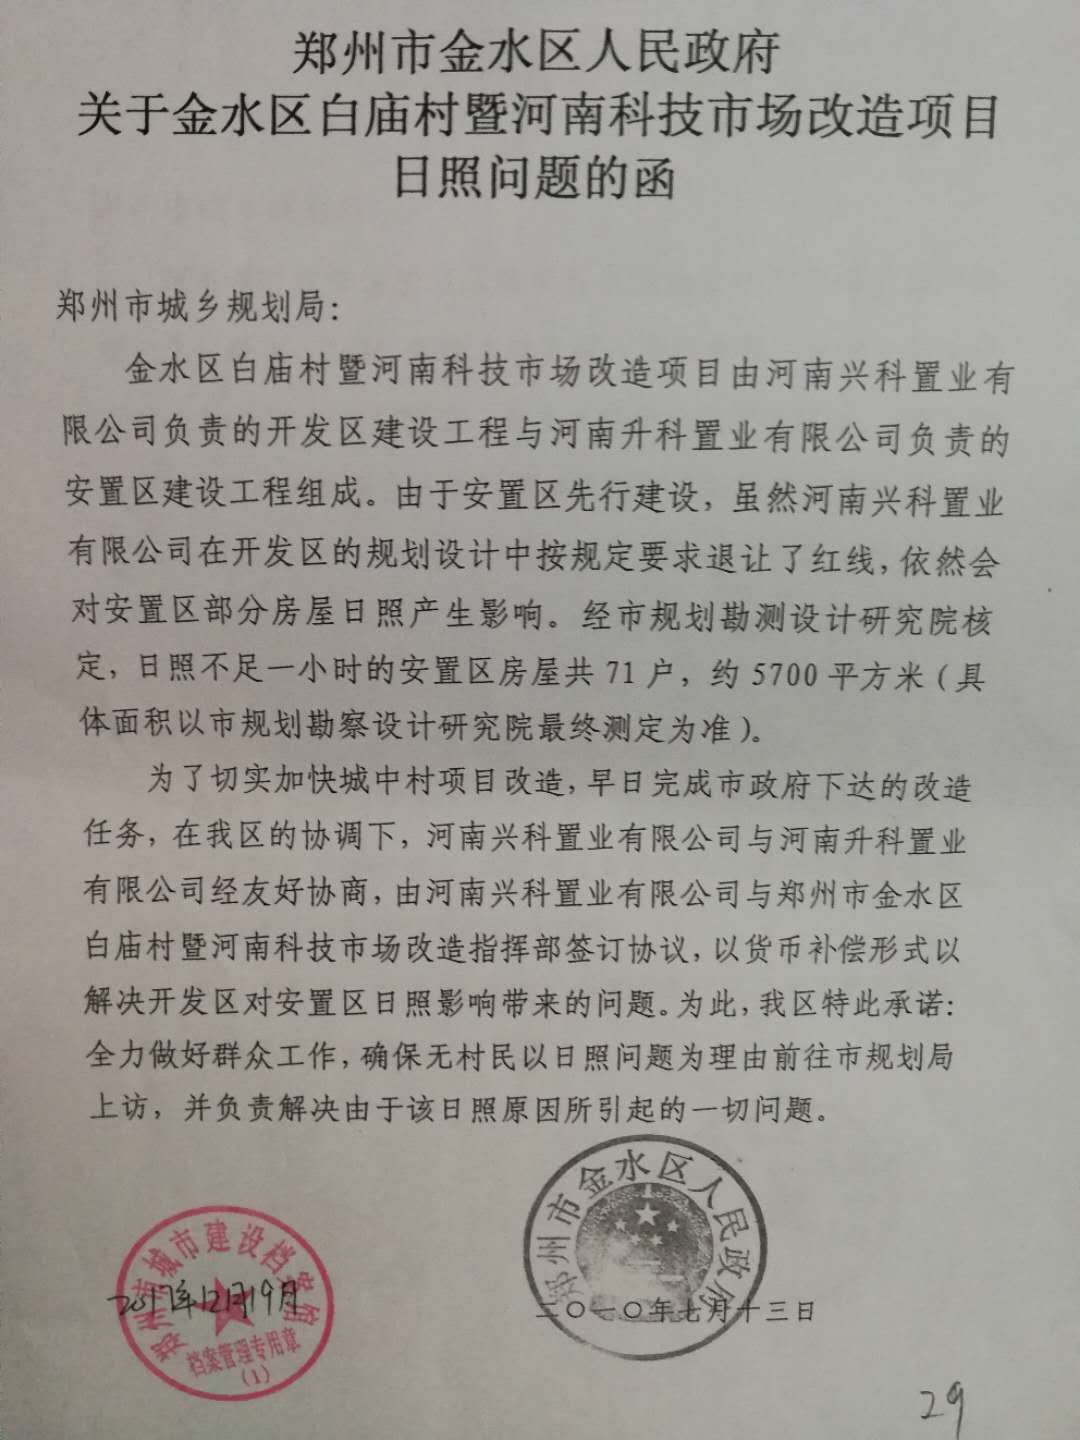 要求郑州市金水区政府公示白庙小区内日照不足